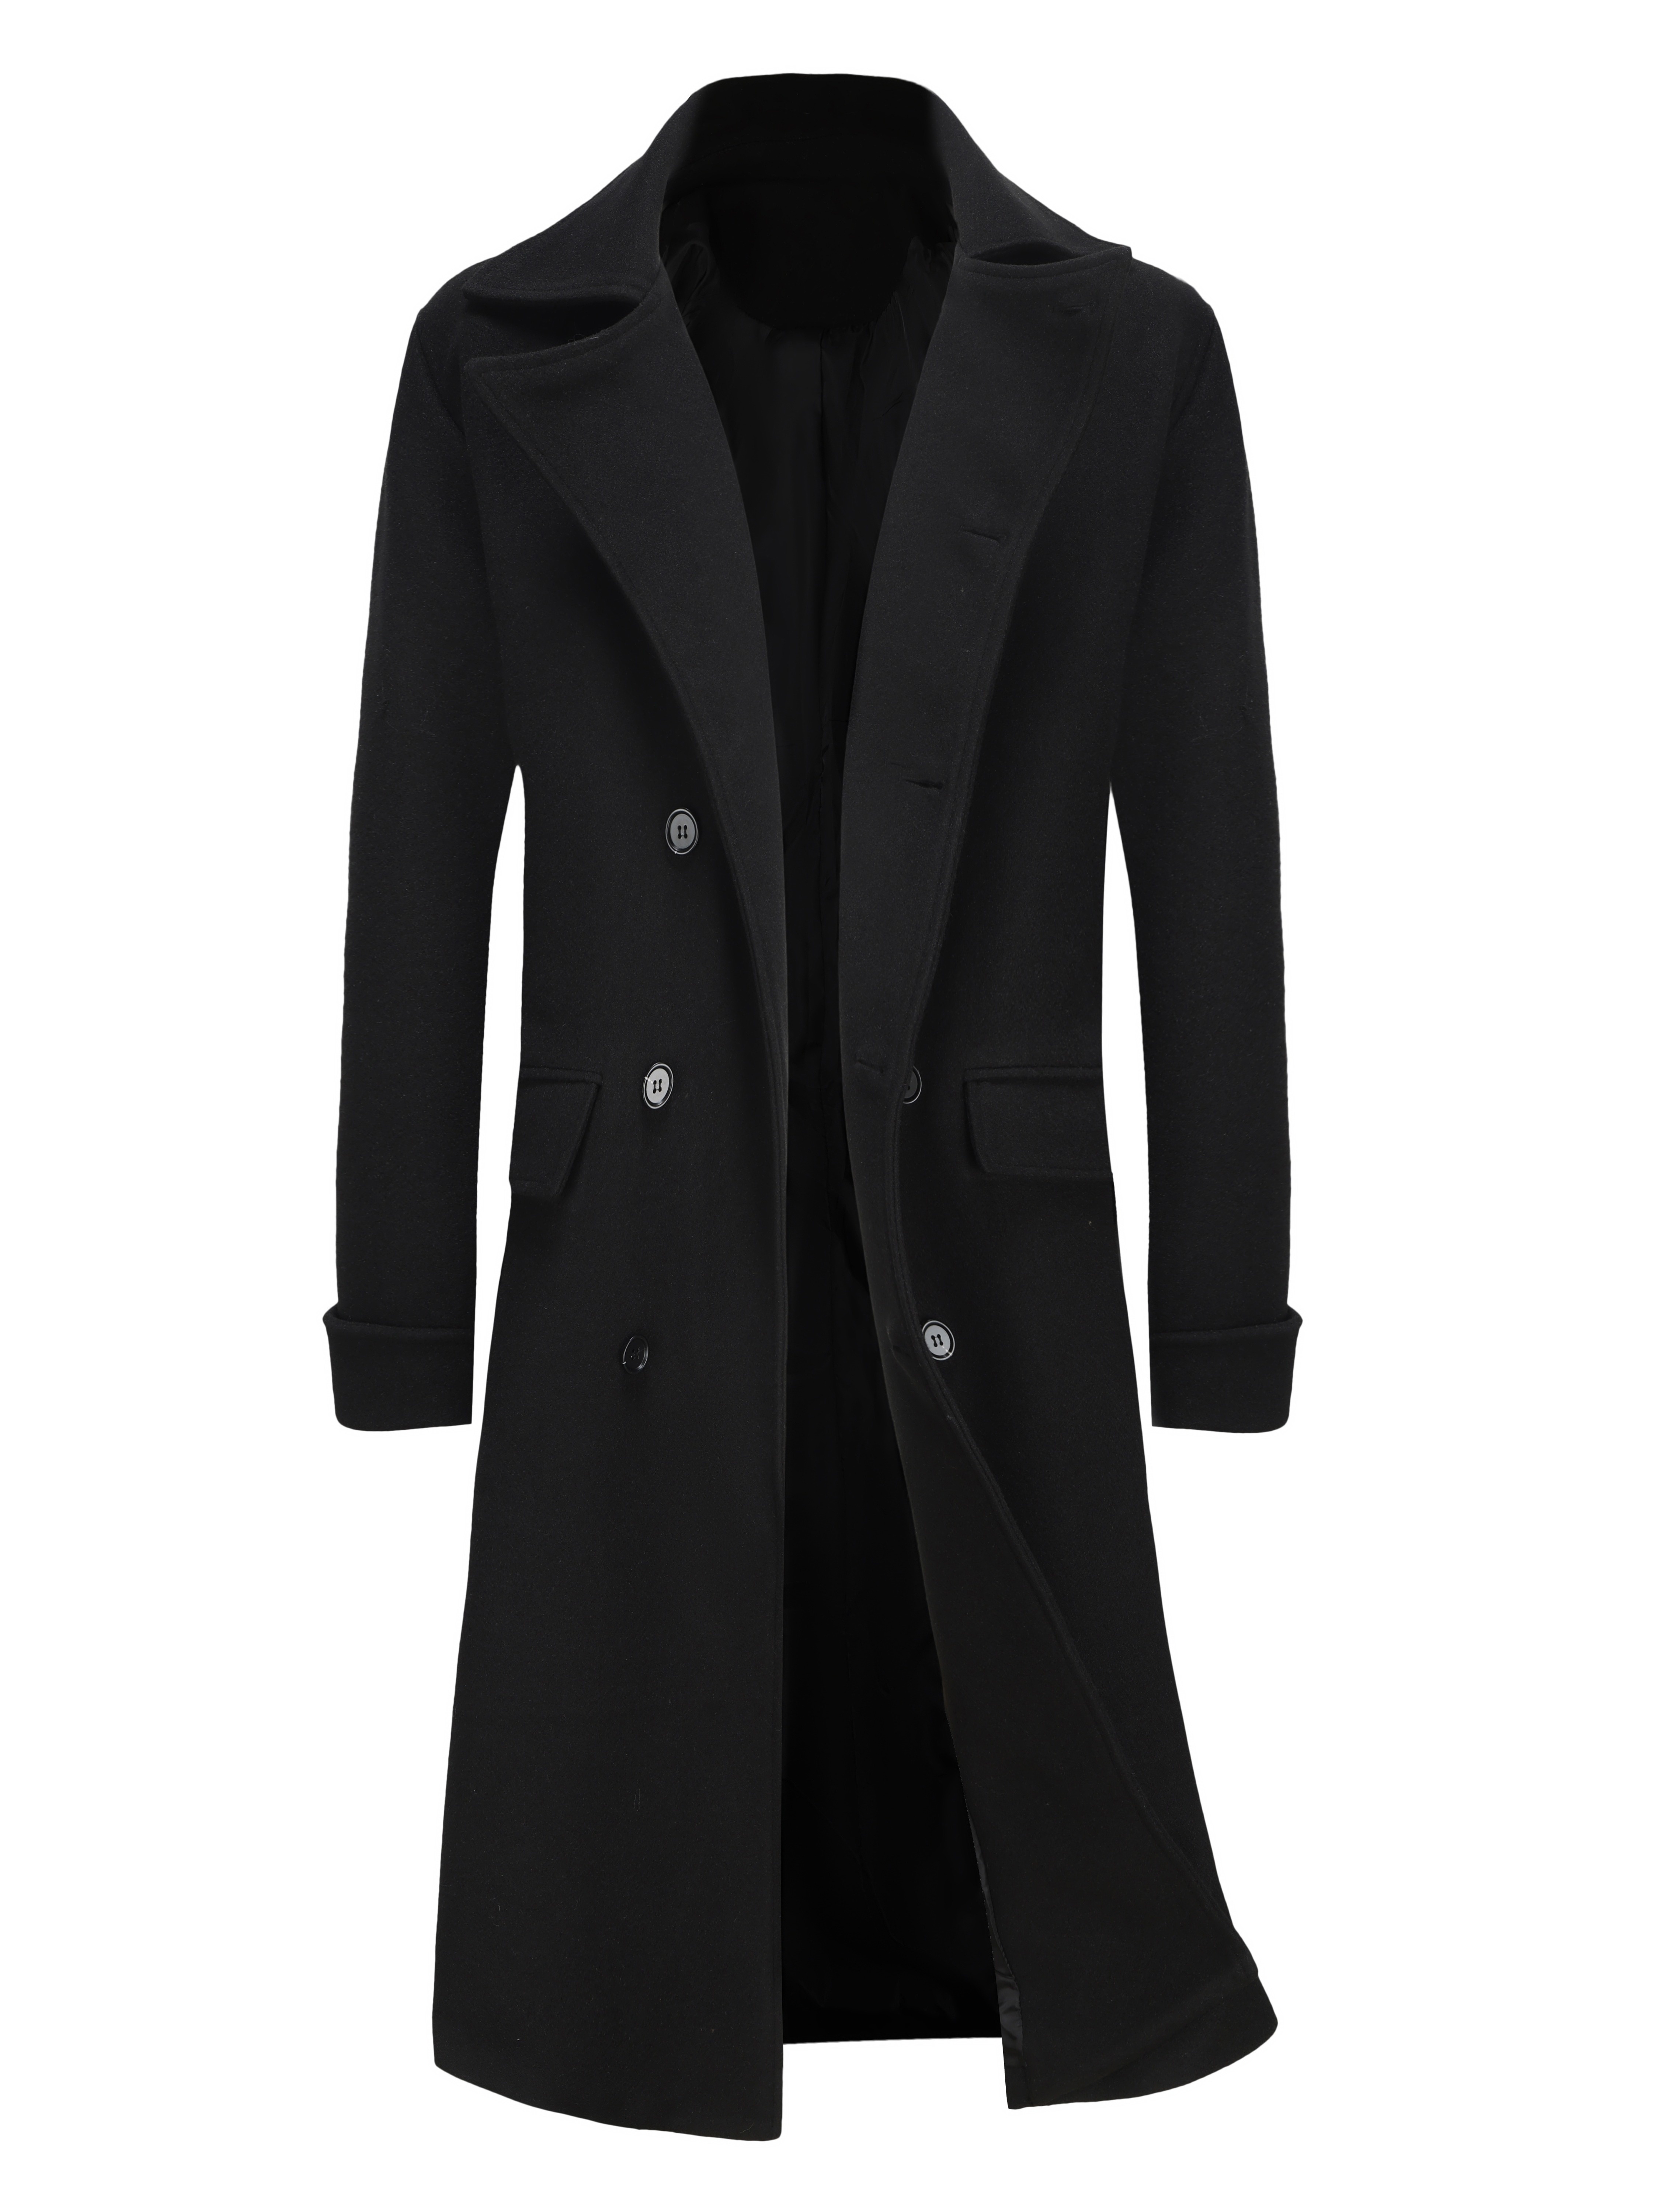 New Model Lapel Business Slim Autumn Mens Leisure Plaid Coat Long Jacket  Outwear